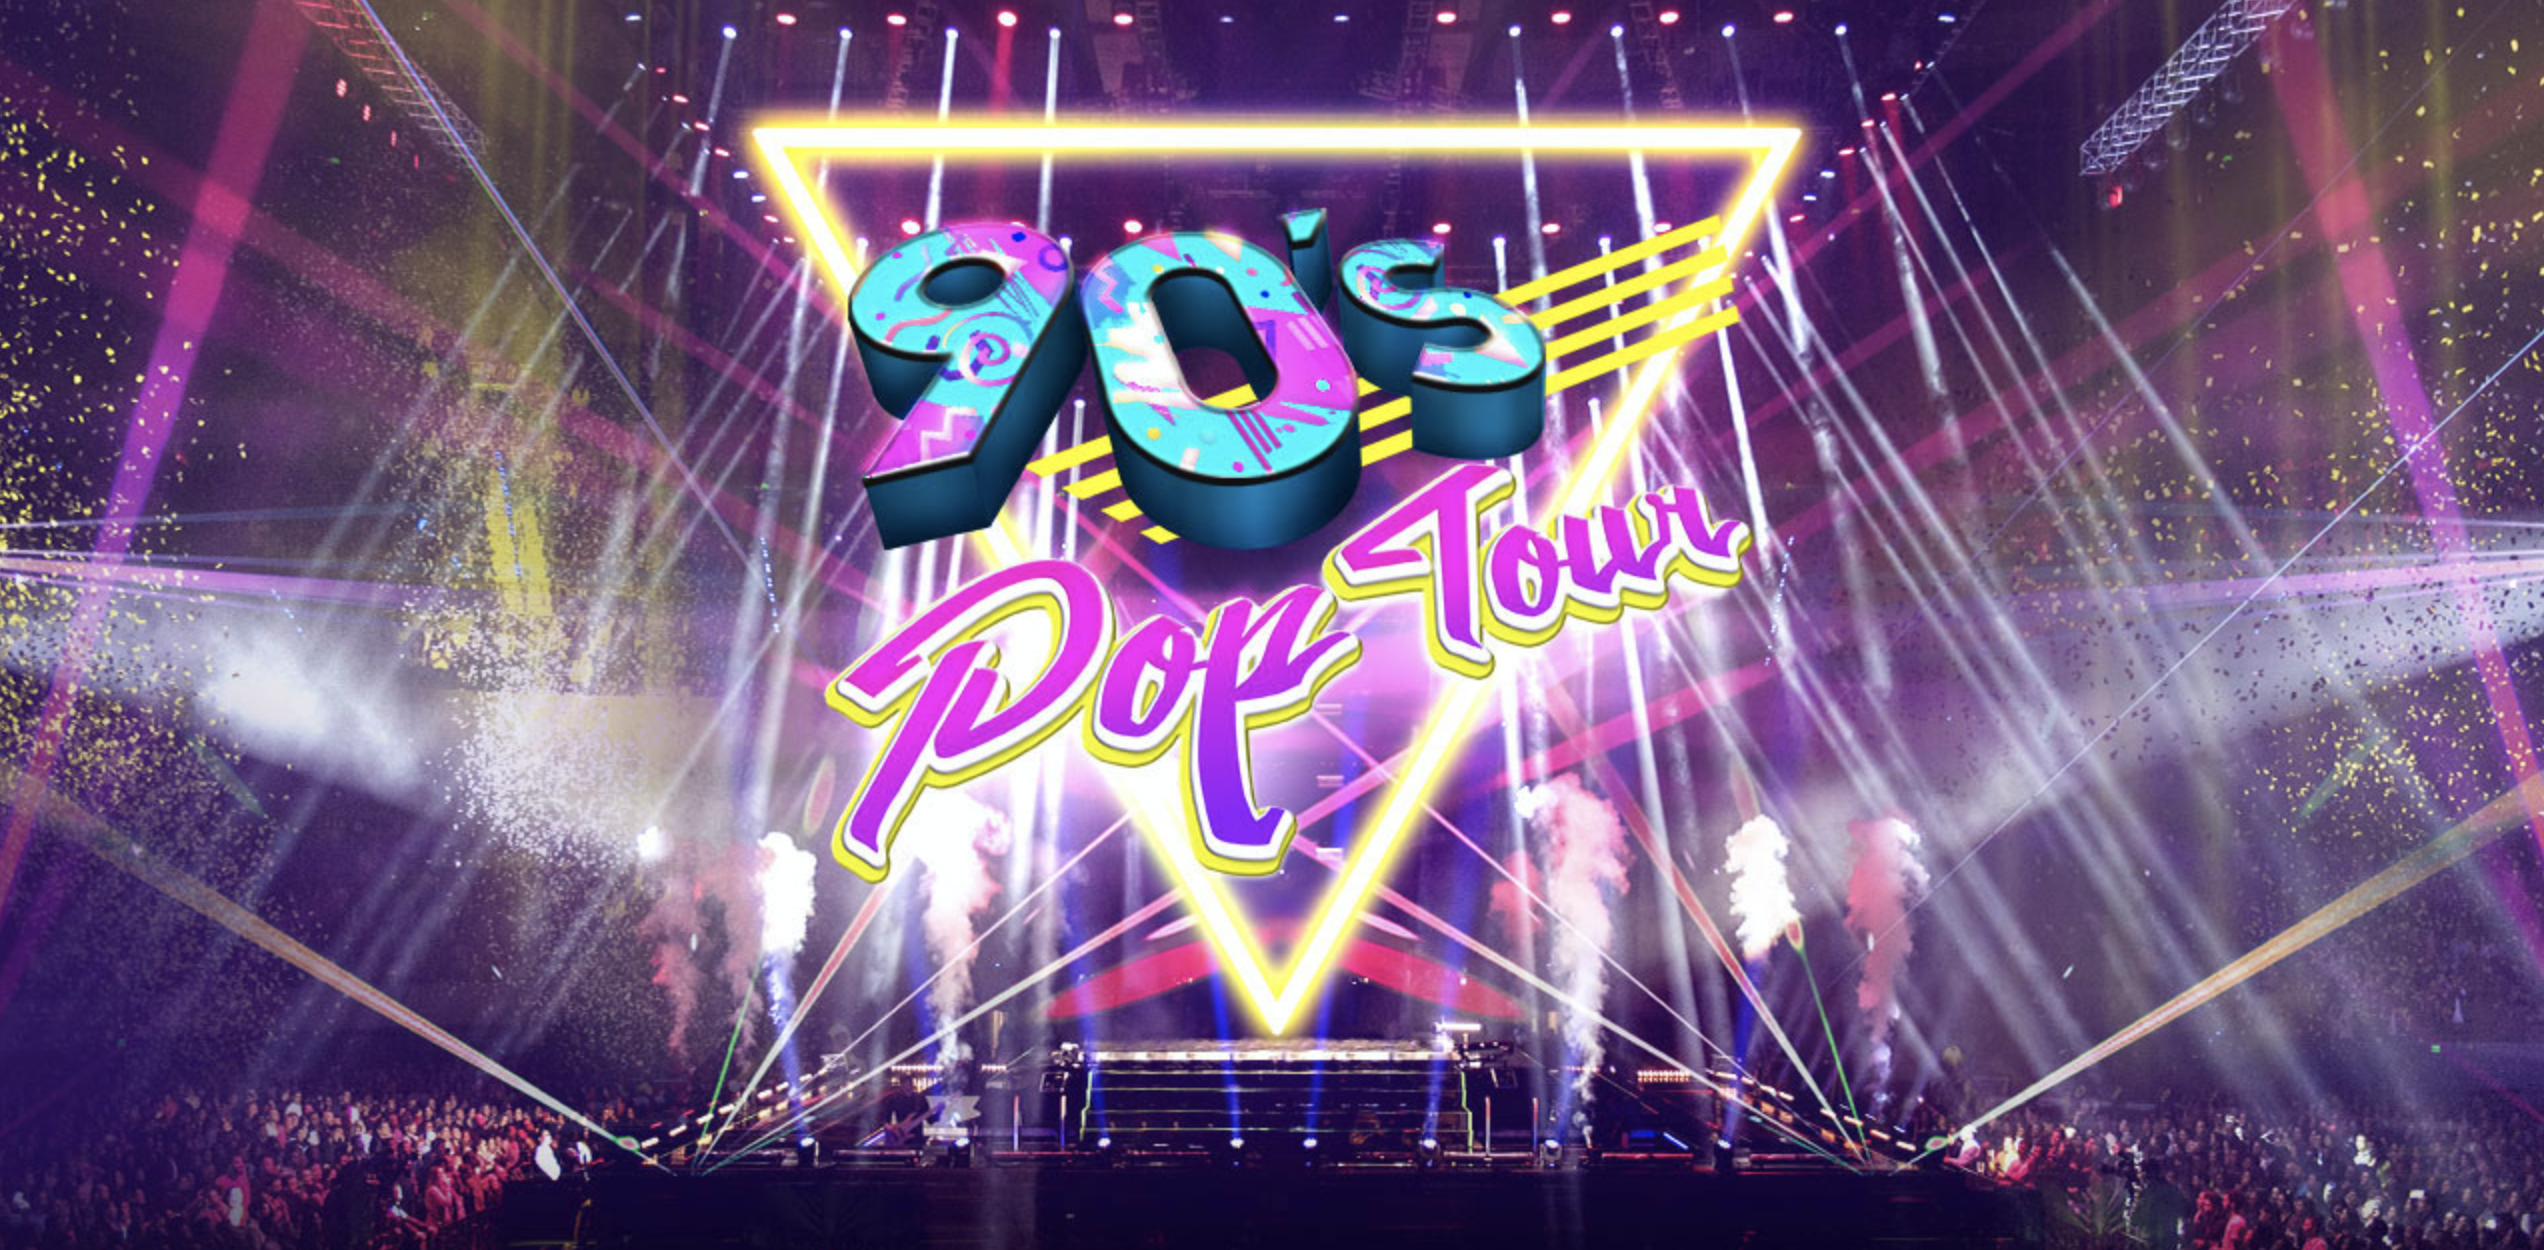 90s pop tour veracruz